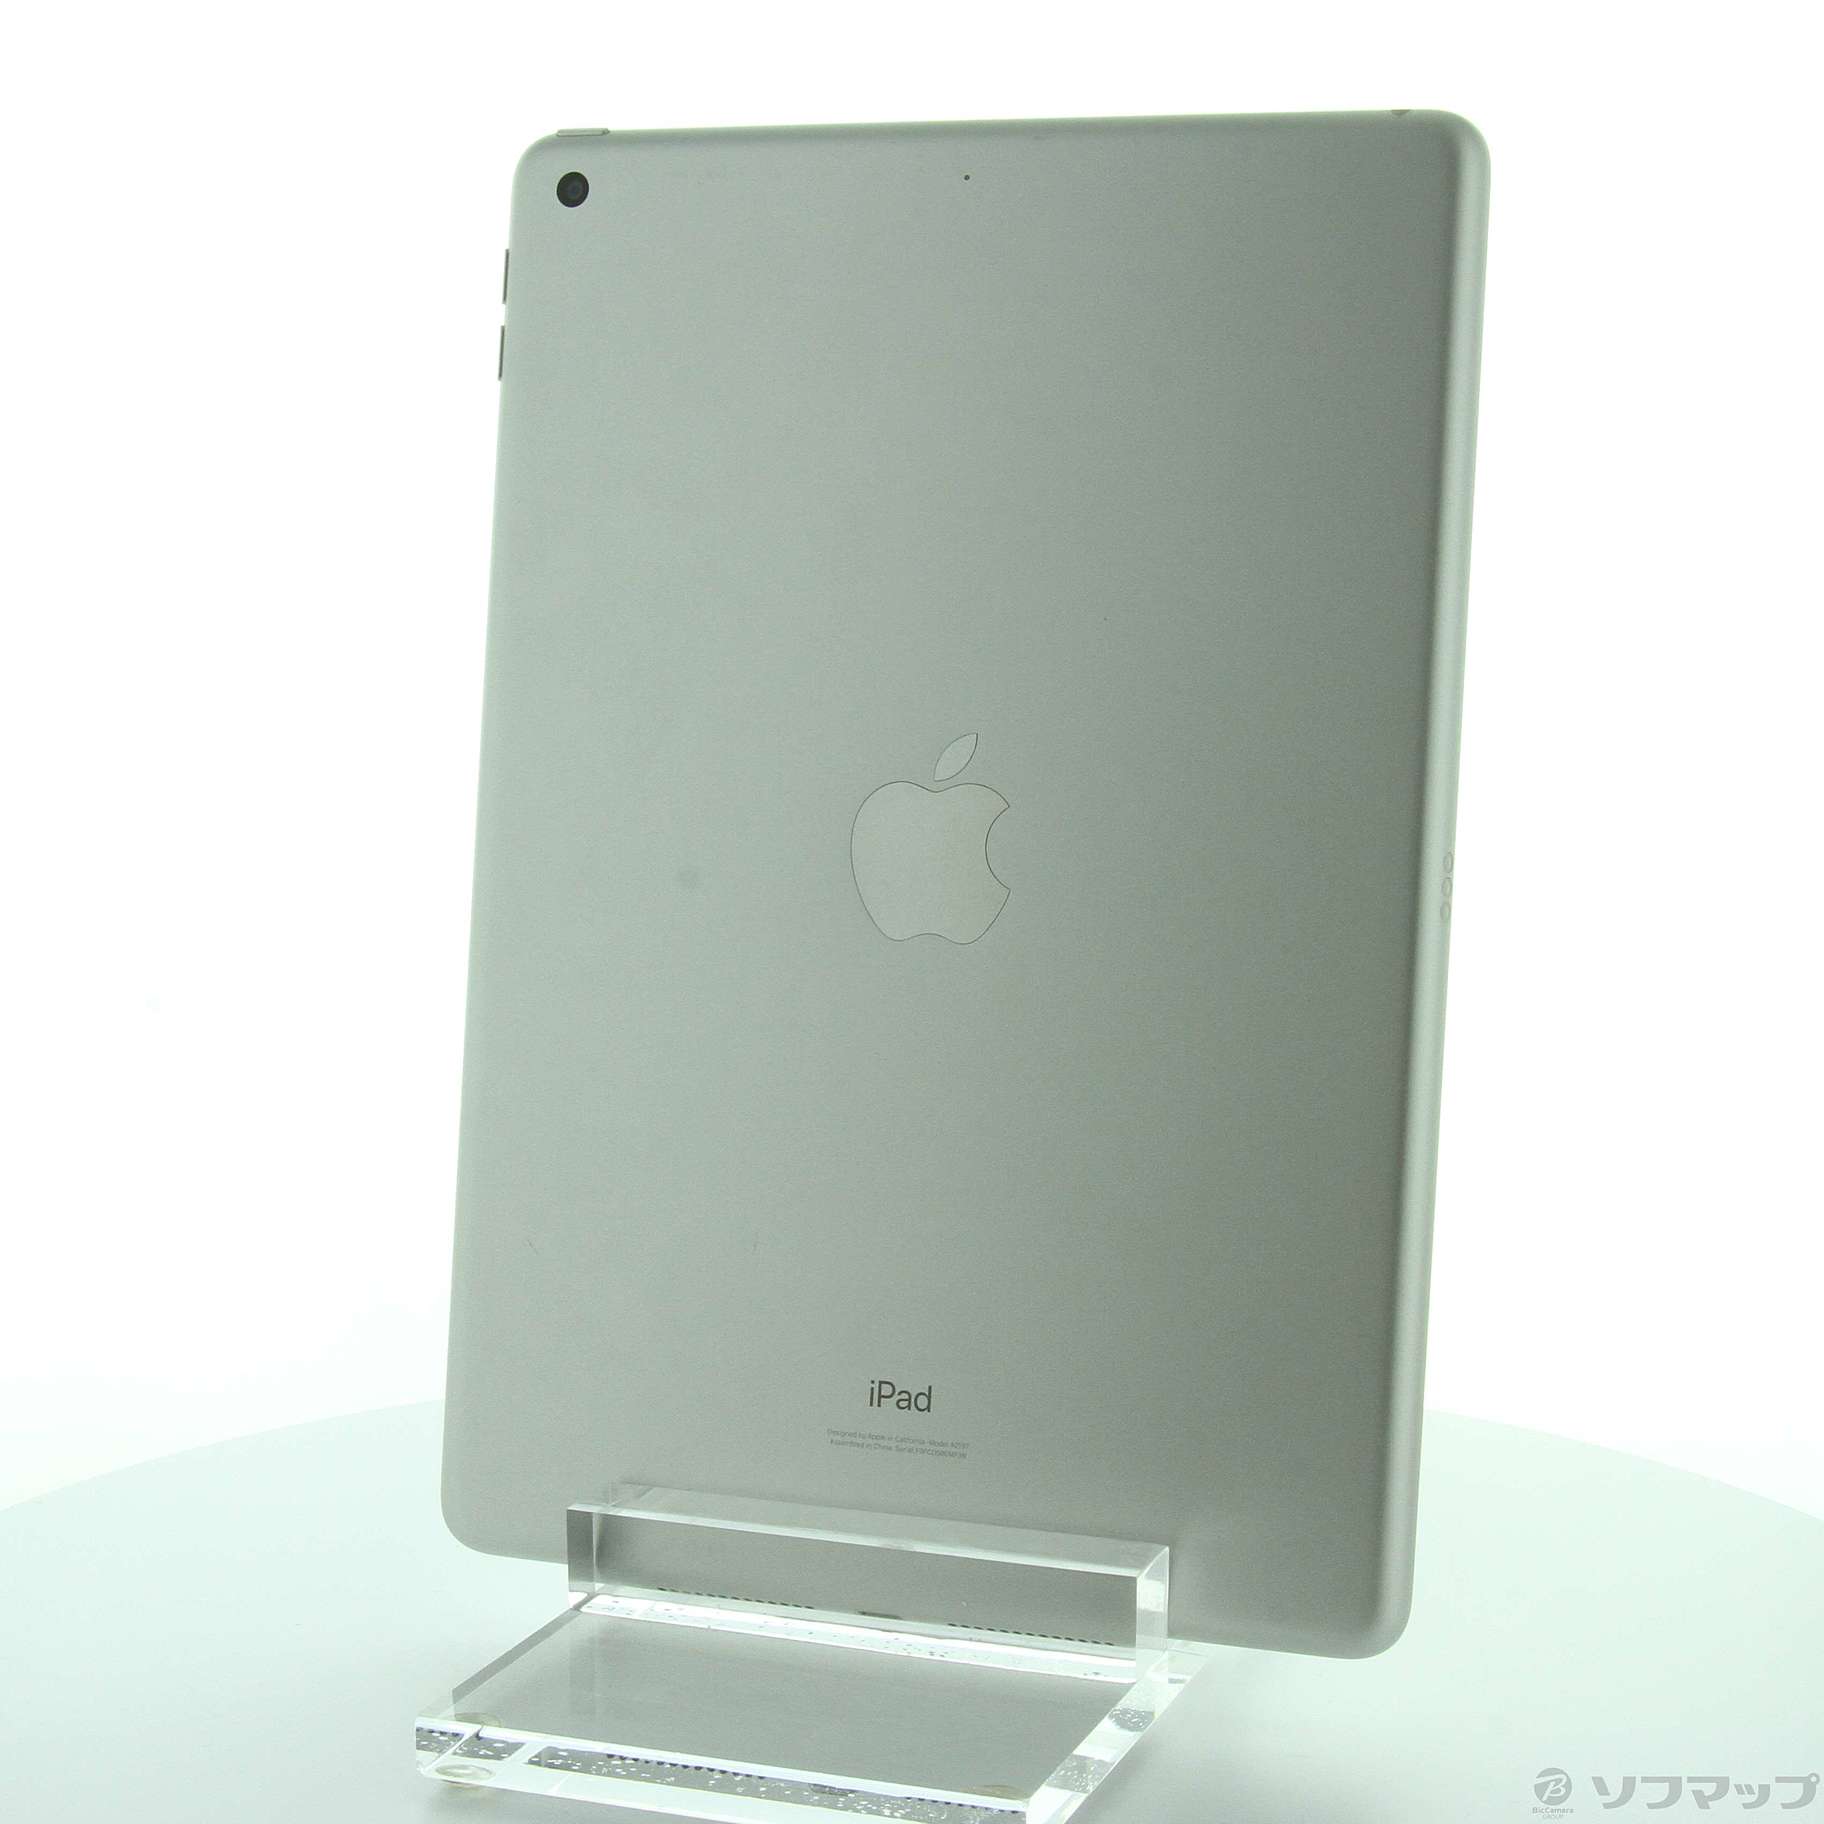 (中古)Apple iPad 第7世代 32GB シルバー MW752J/A Wi-Fi(258-ud)